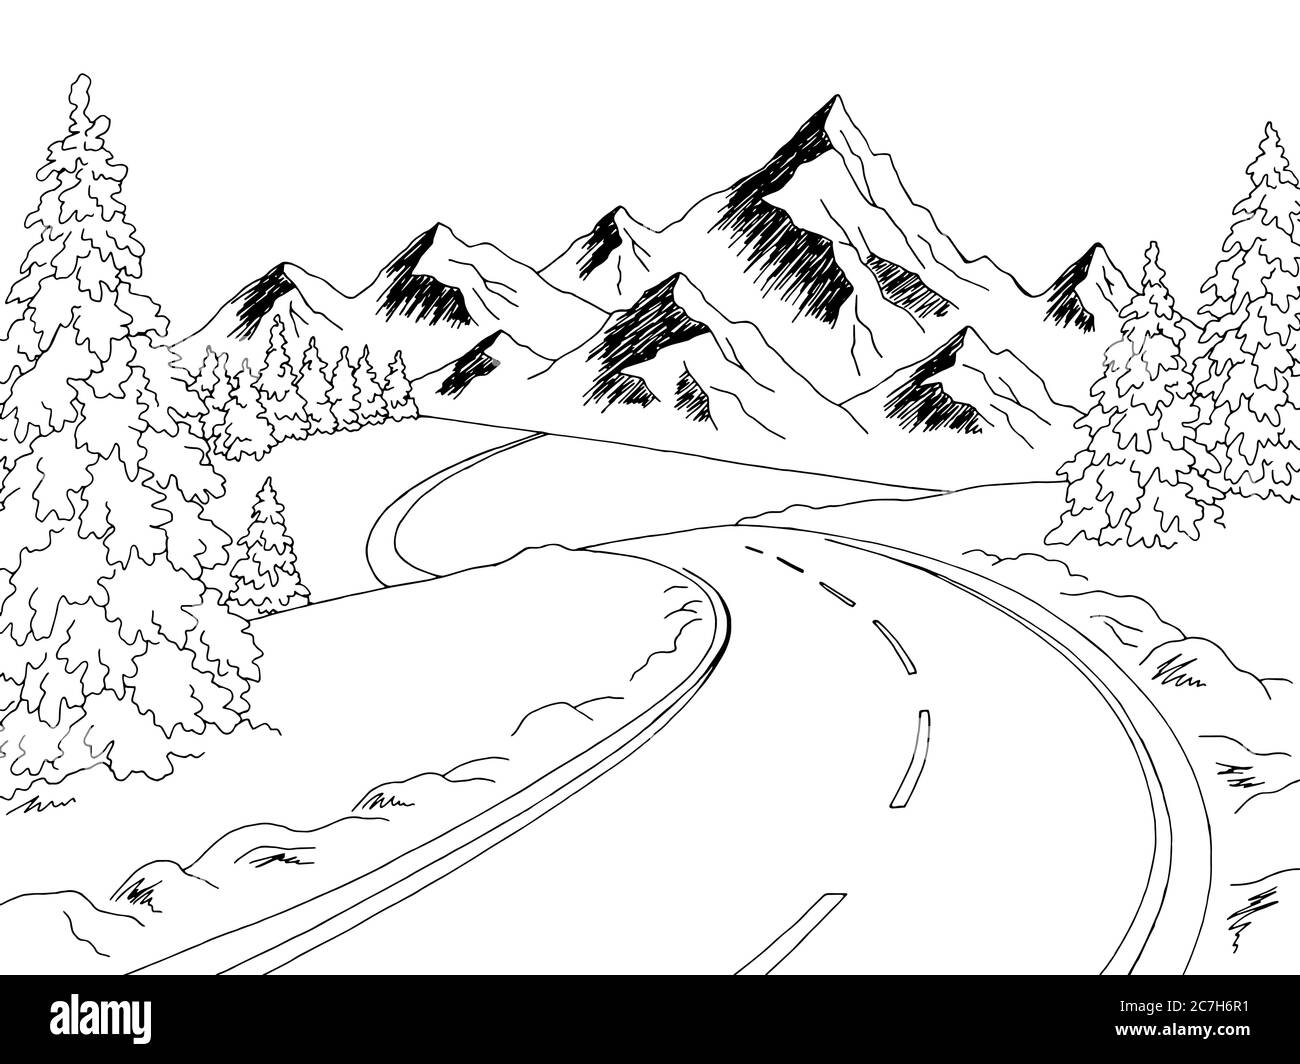 Route de montagne graphique noir blanc hiver paysage dessin illustration vecteur Illustration de Vecteur